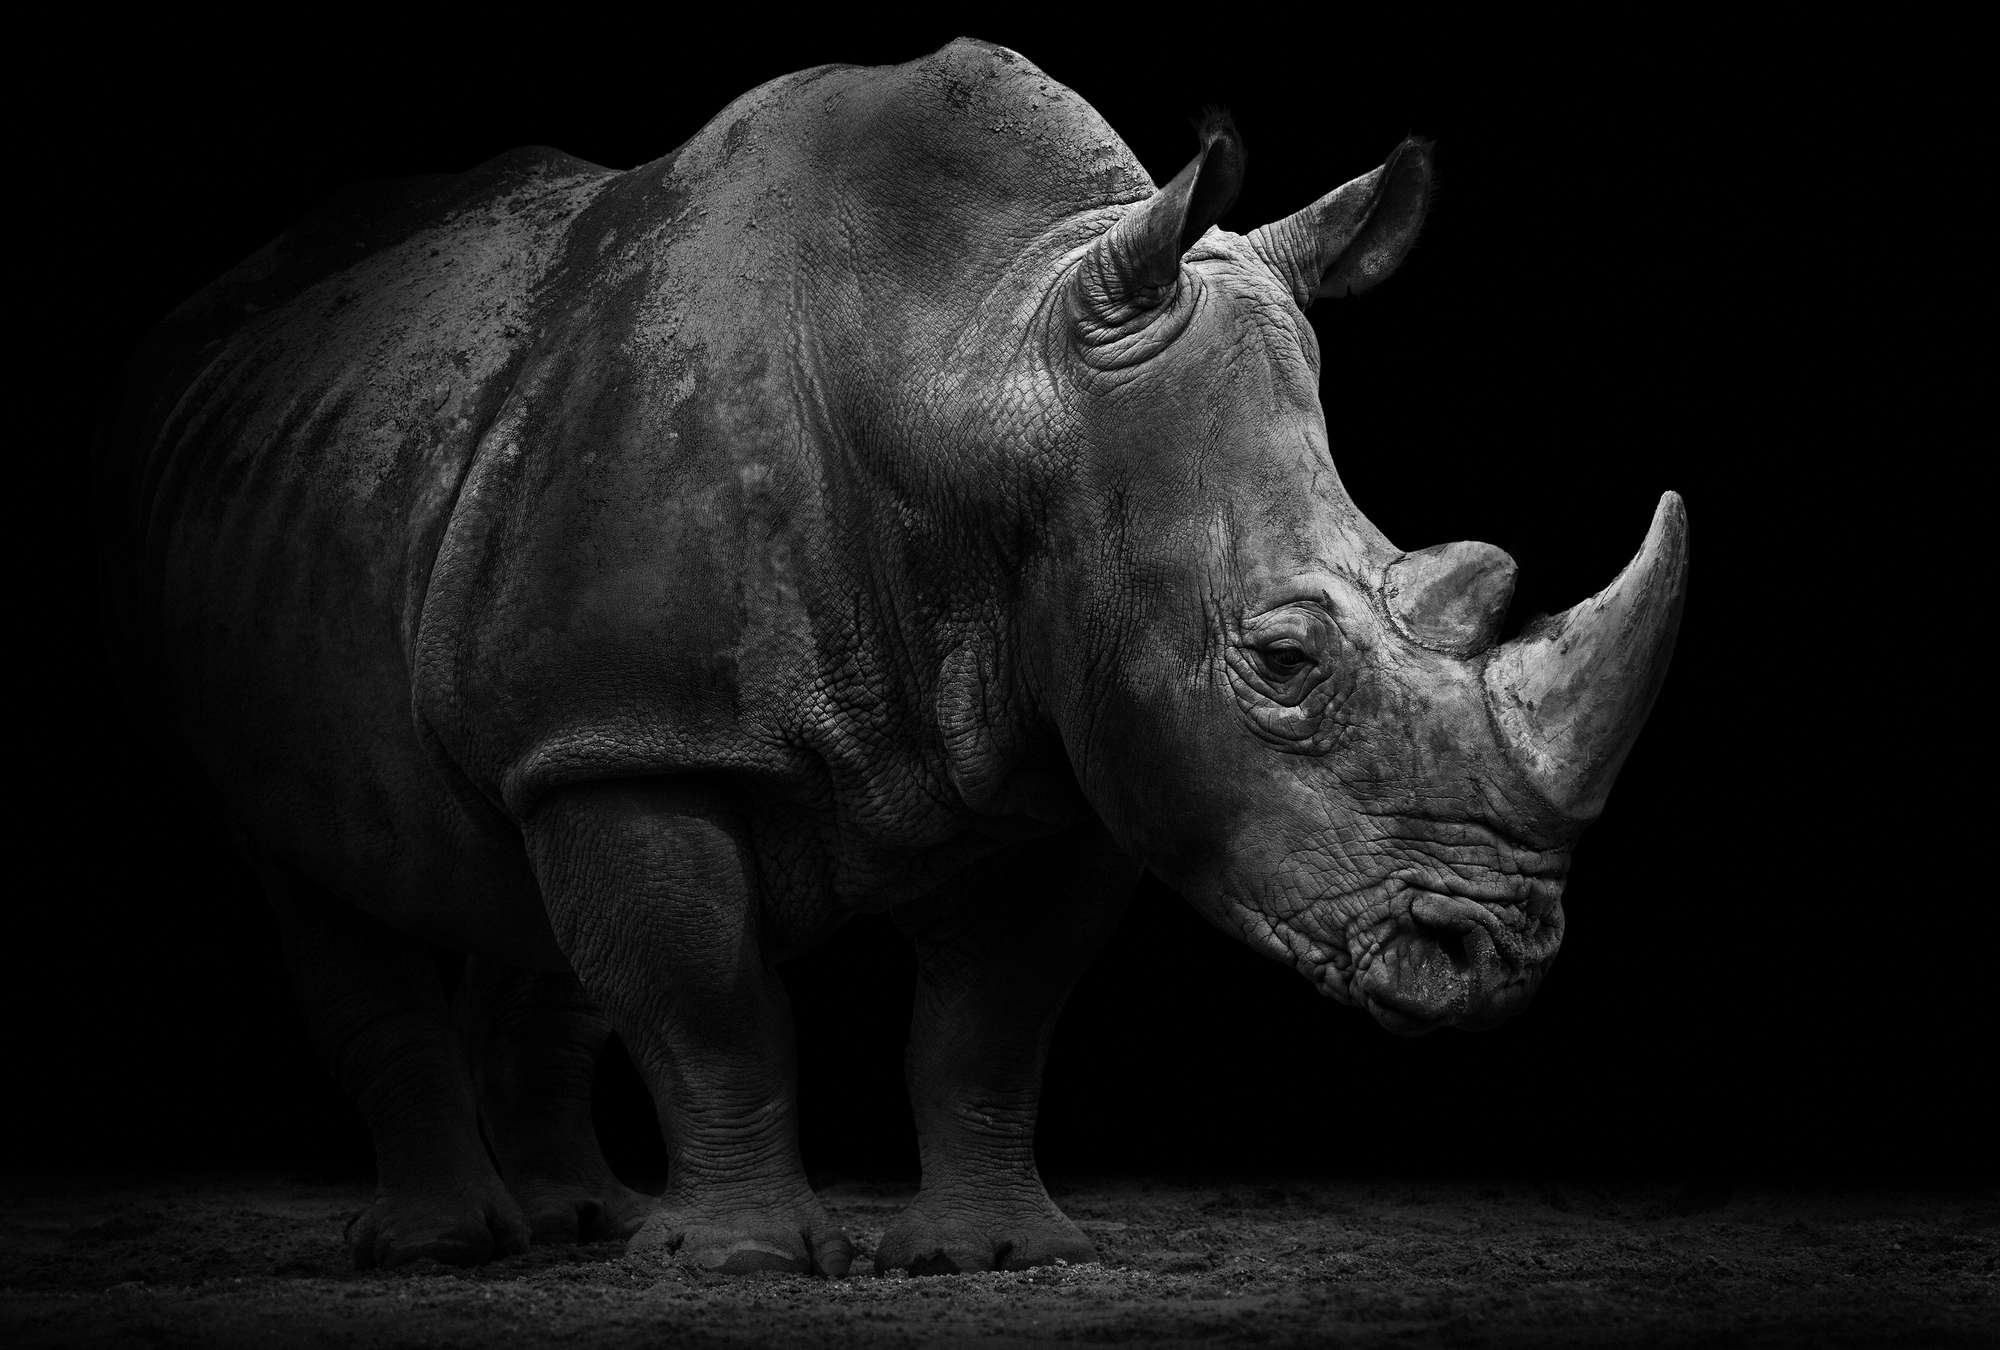             Muurschildering Rhino tegen een zwarte achtergrond
        